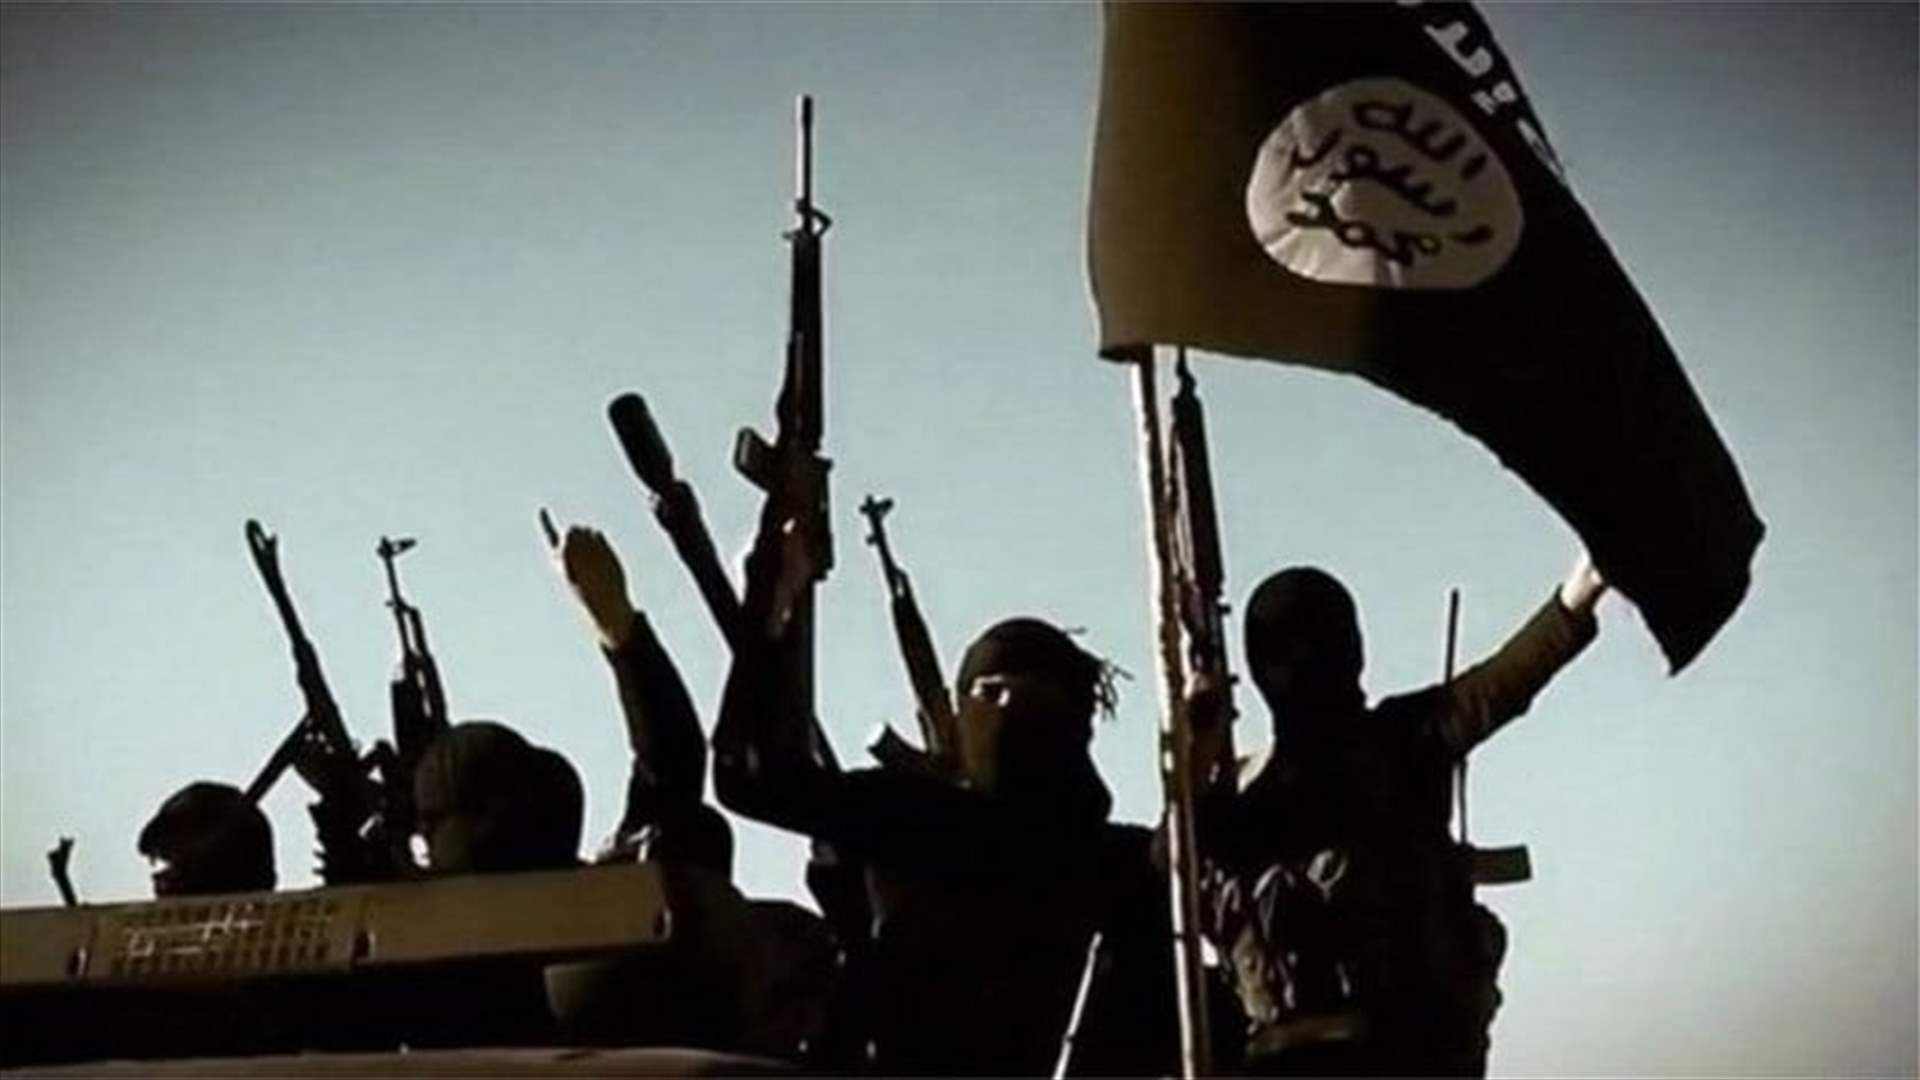 تنظيم الدولة الإسلامية يعلن مسؤوليته عن هجوم الرقة في سوريا